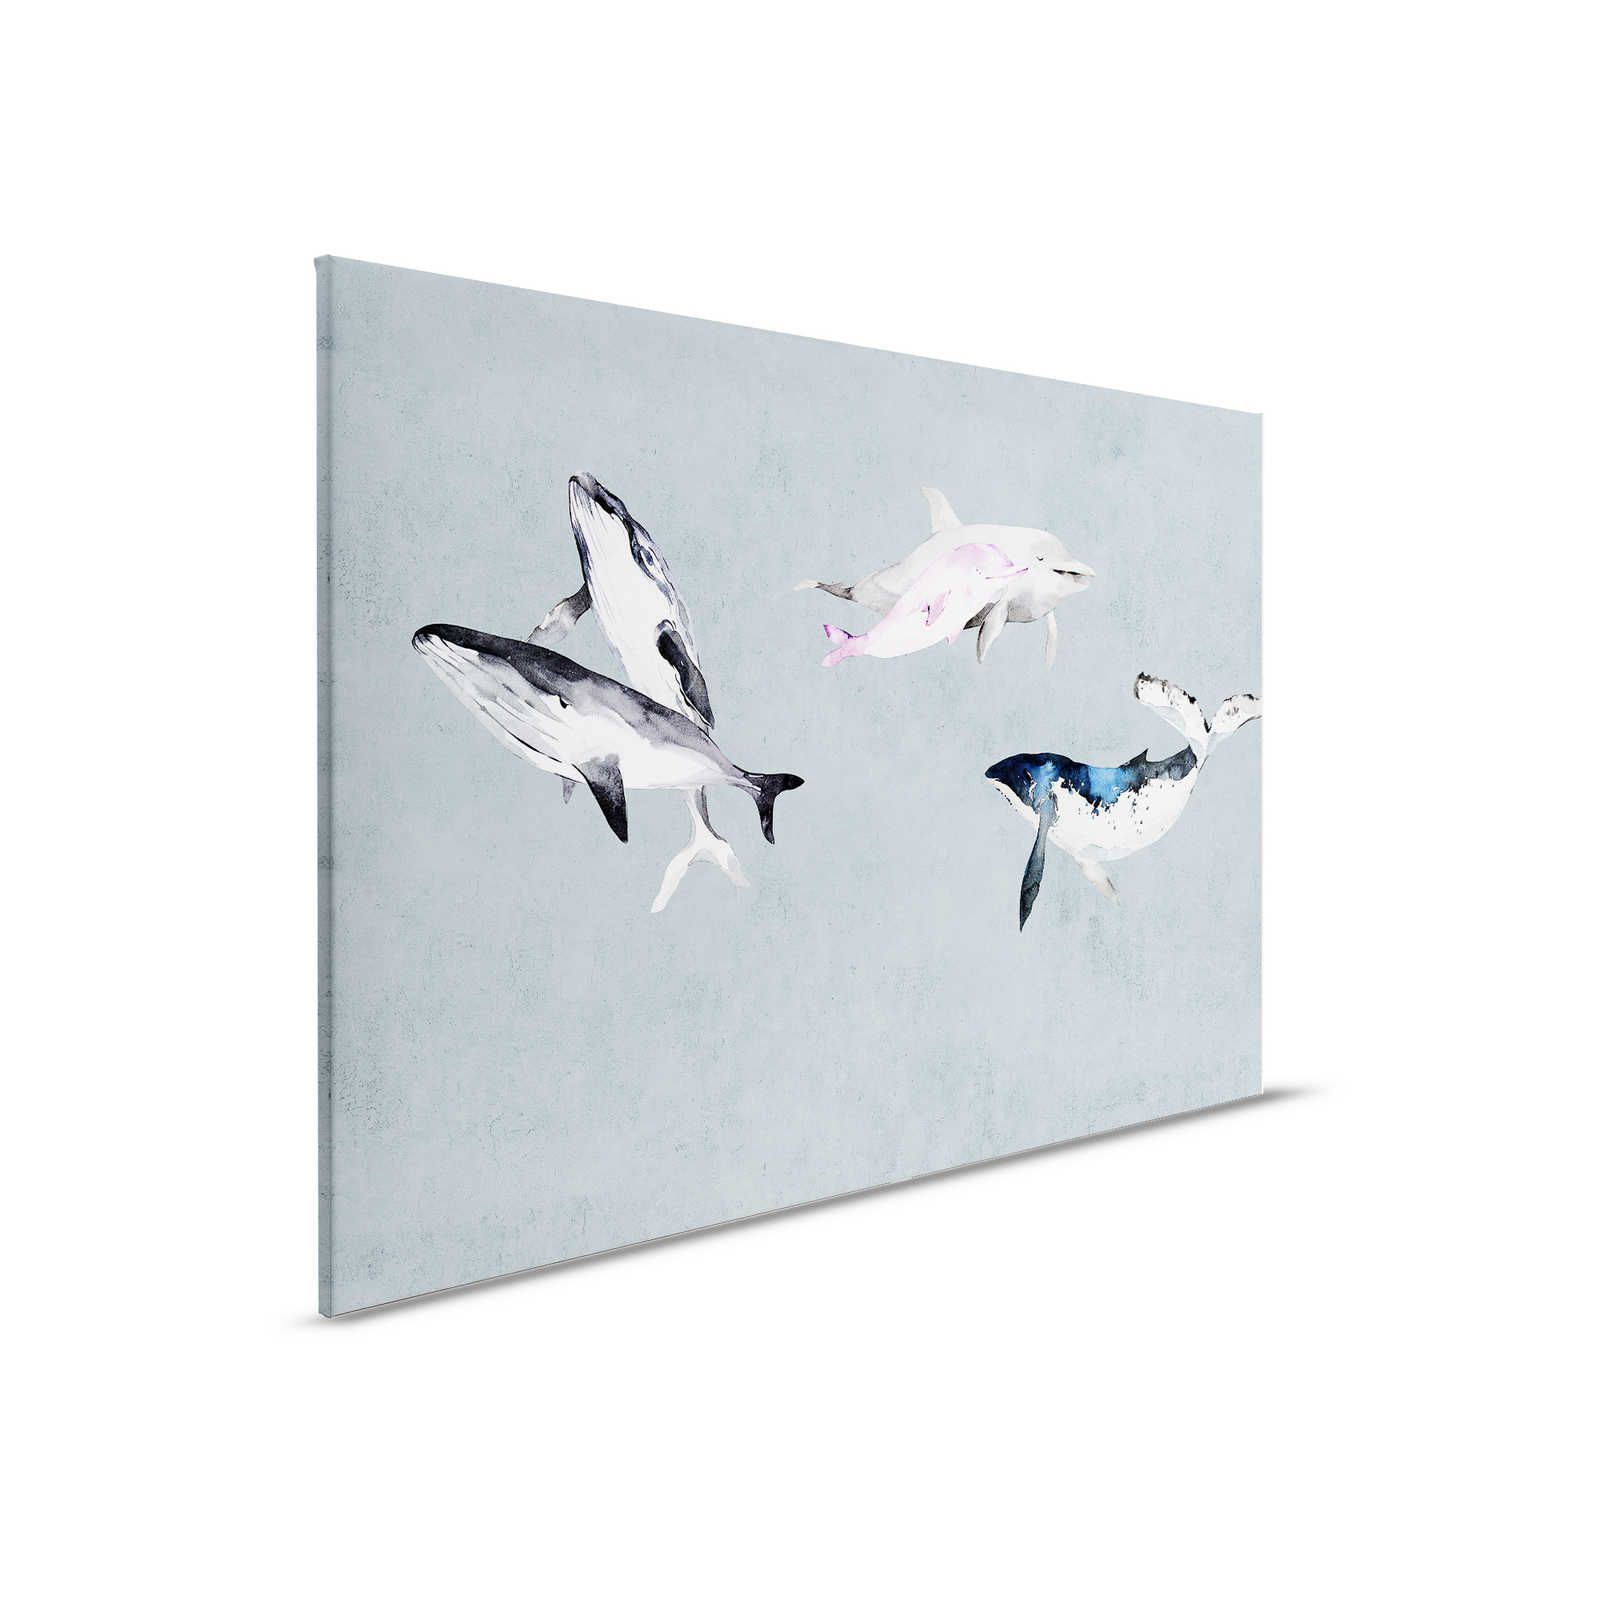 Oceans Five 1 - Canvas schilderij Walvissen & Dolfijnen in aquarelstijl - 0,90 m x 0,60 m
